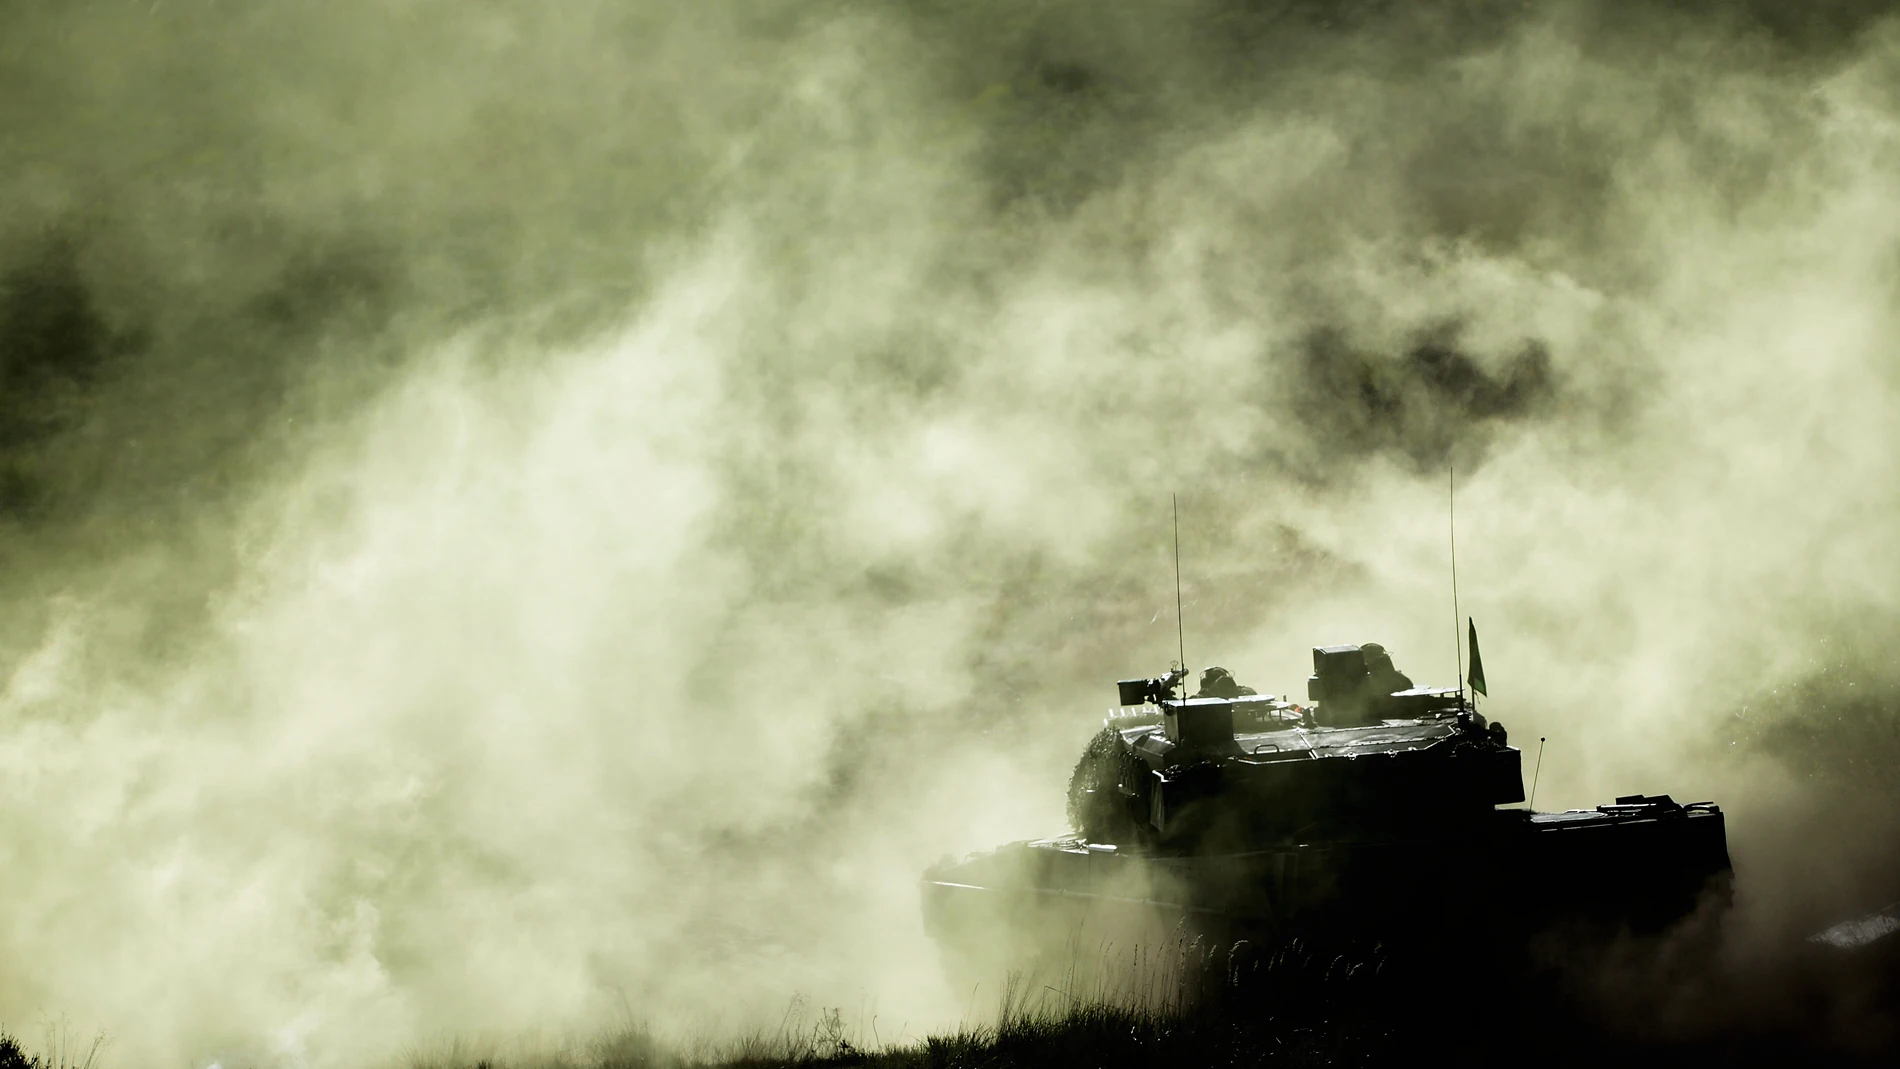 Los tanques Leopard 2 están considerados uno de los vehículos de guerra más avanzados jamás creados | Fuente: Peter Steffen/DPA